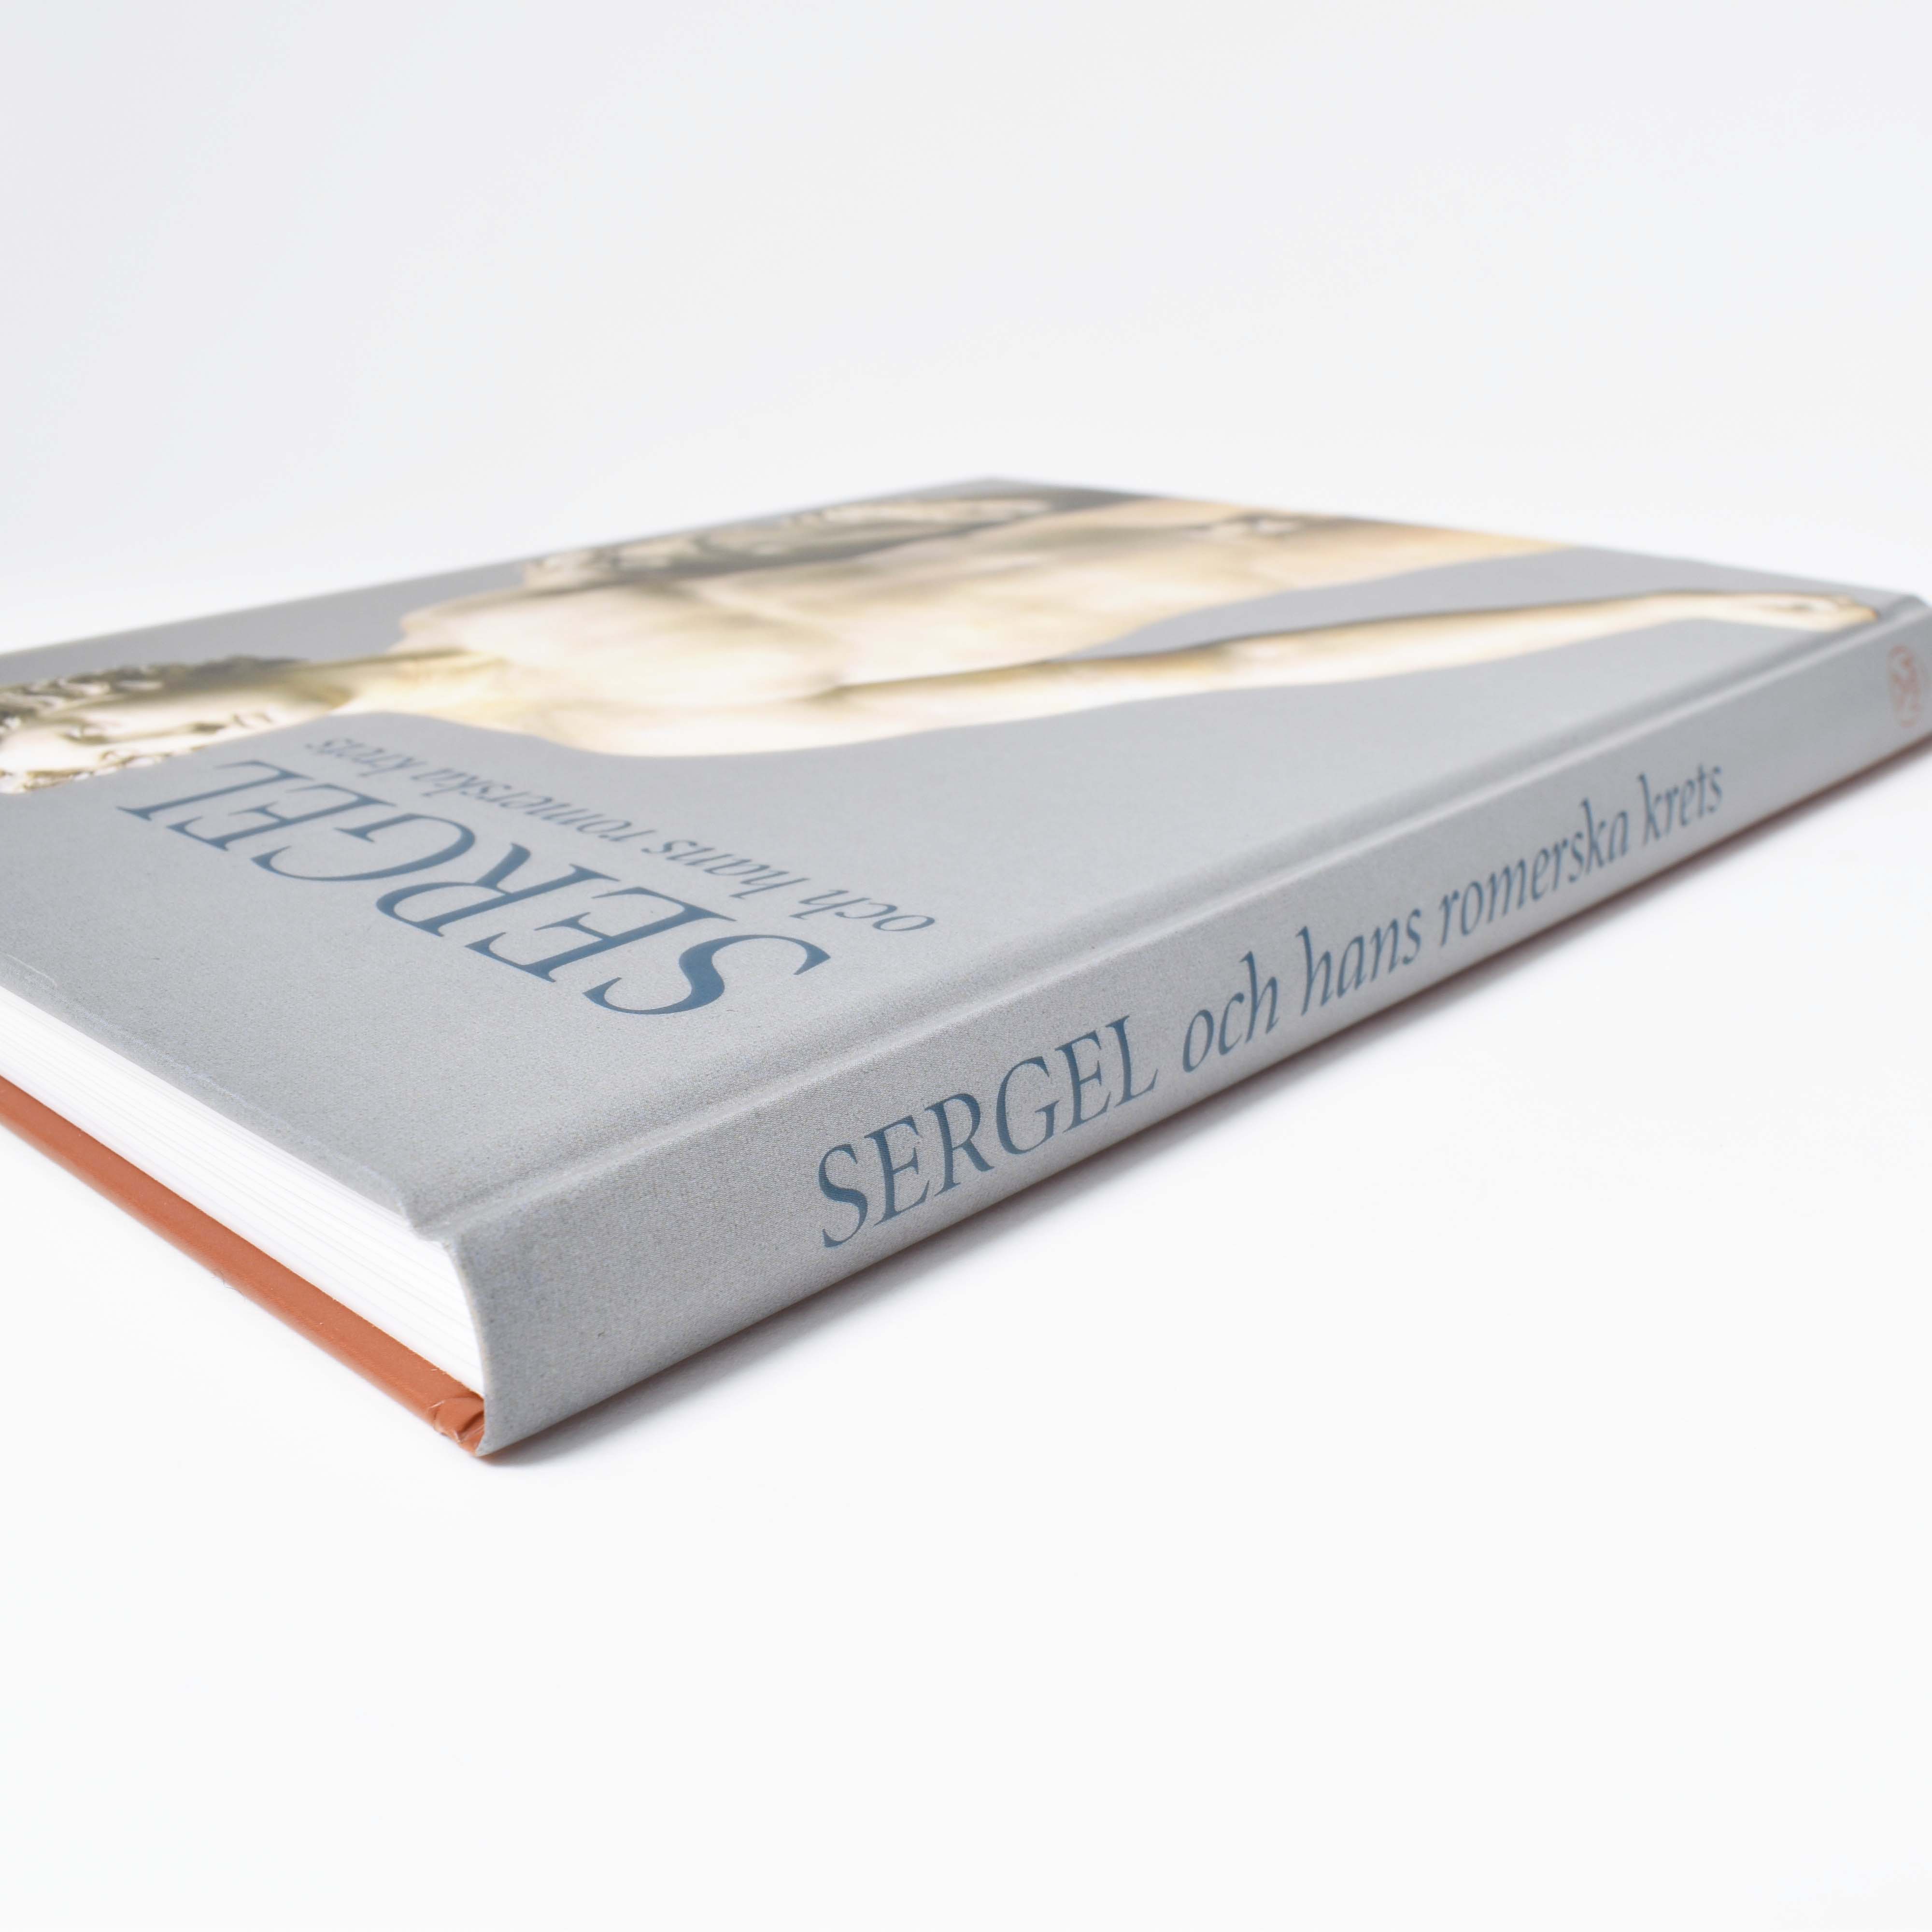 Närbild på bokens titel "Sergel och hans romerska krets"